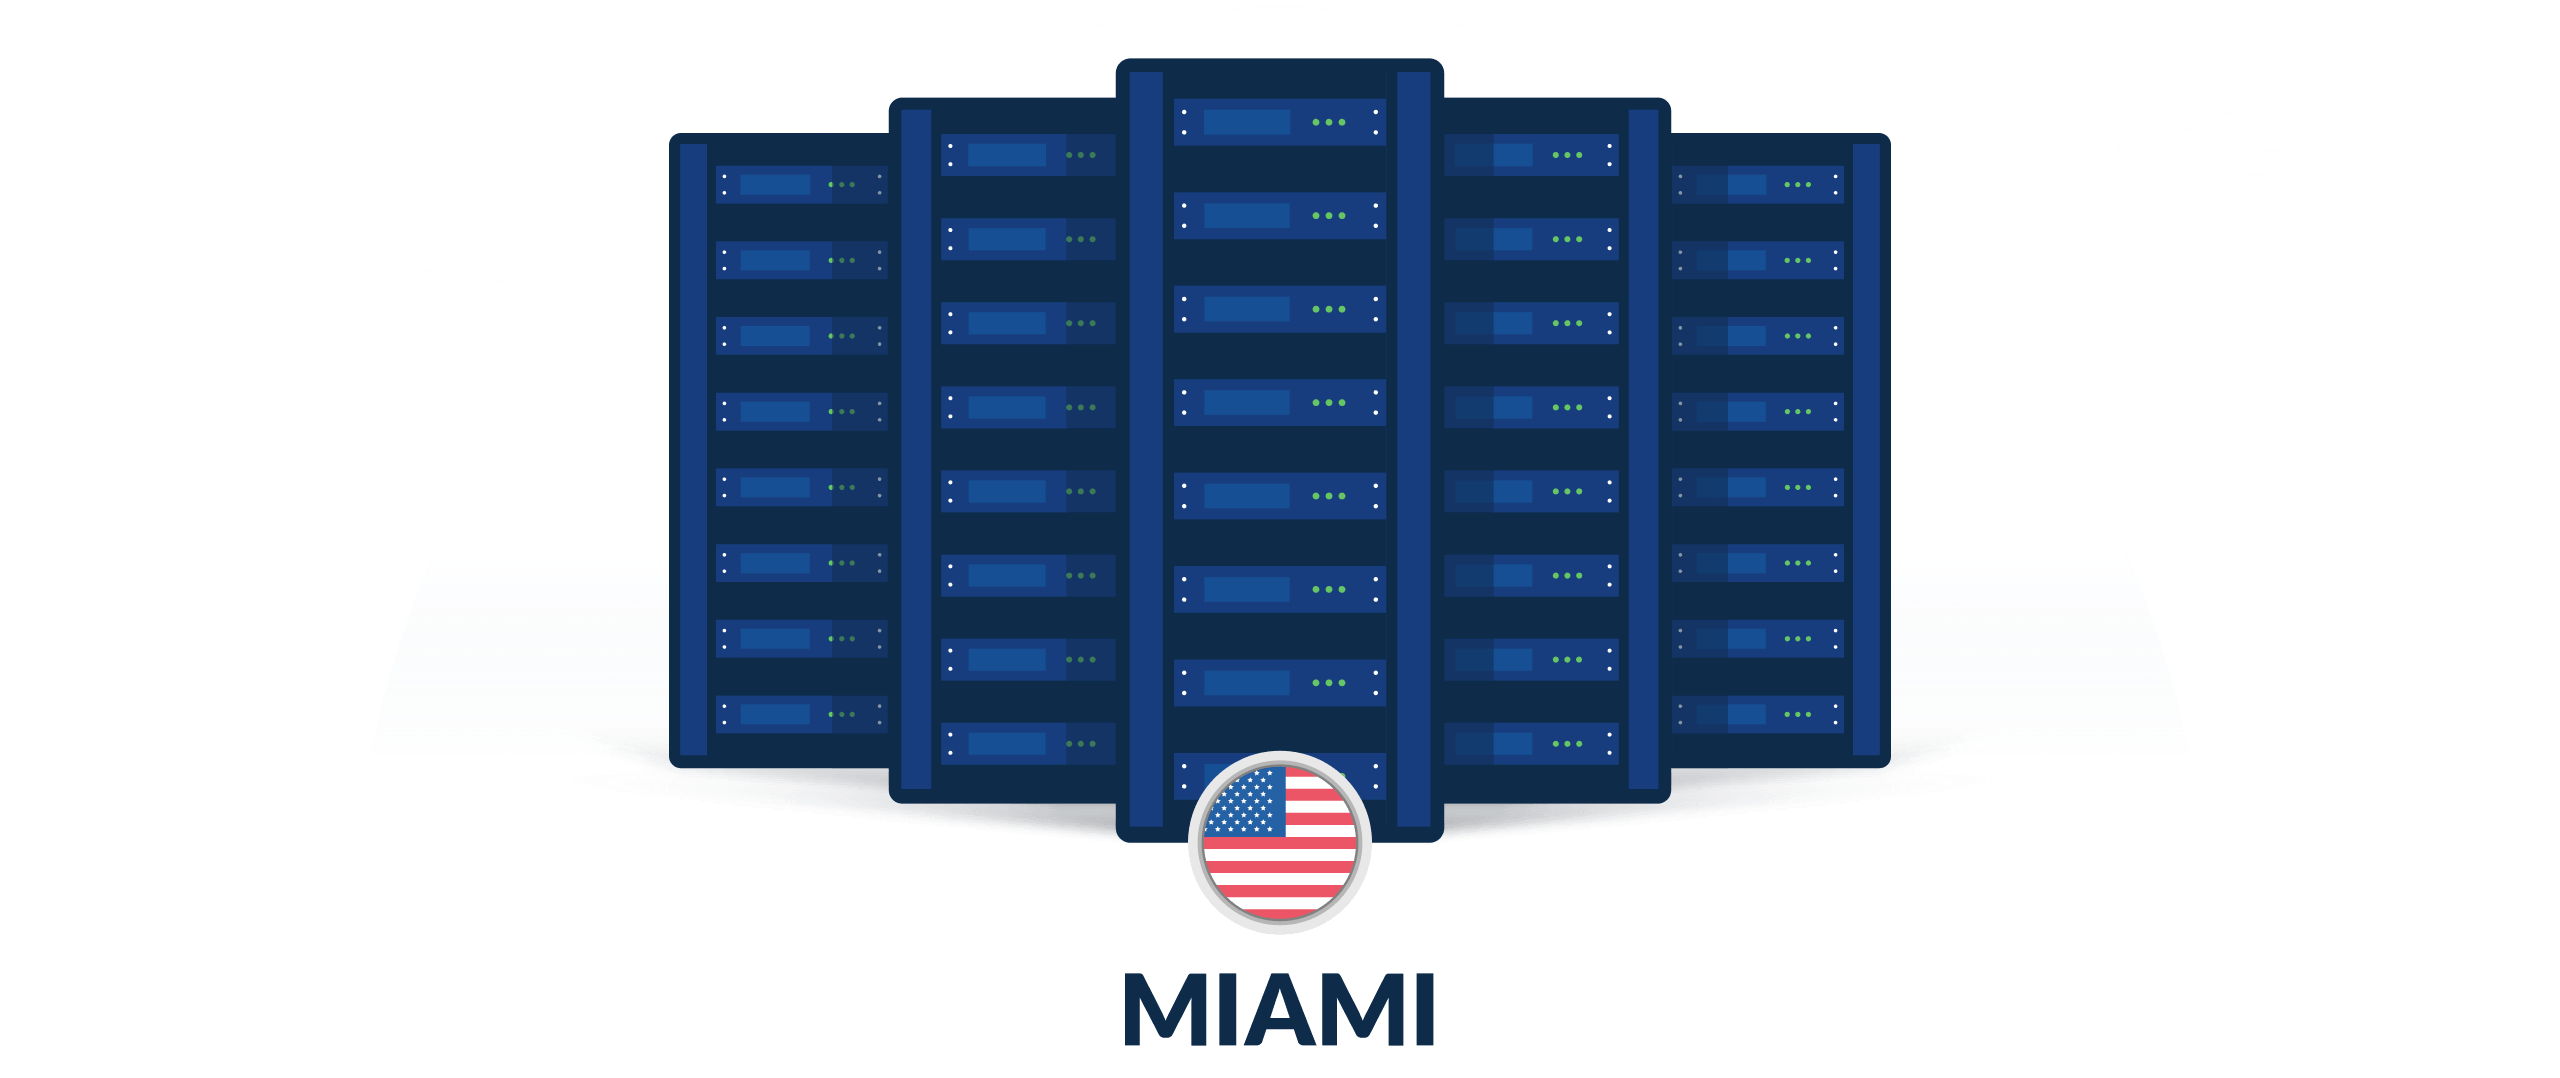 VPN servers in Miami, United States